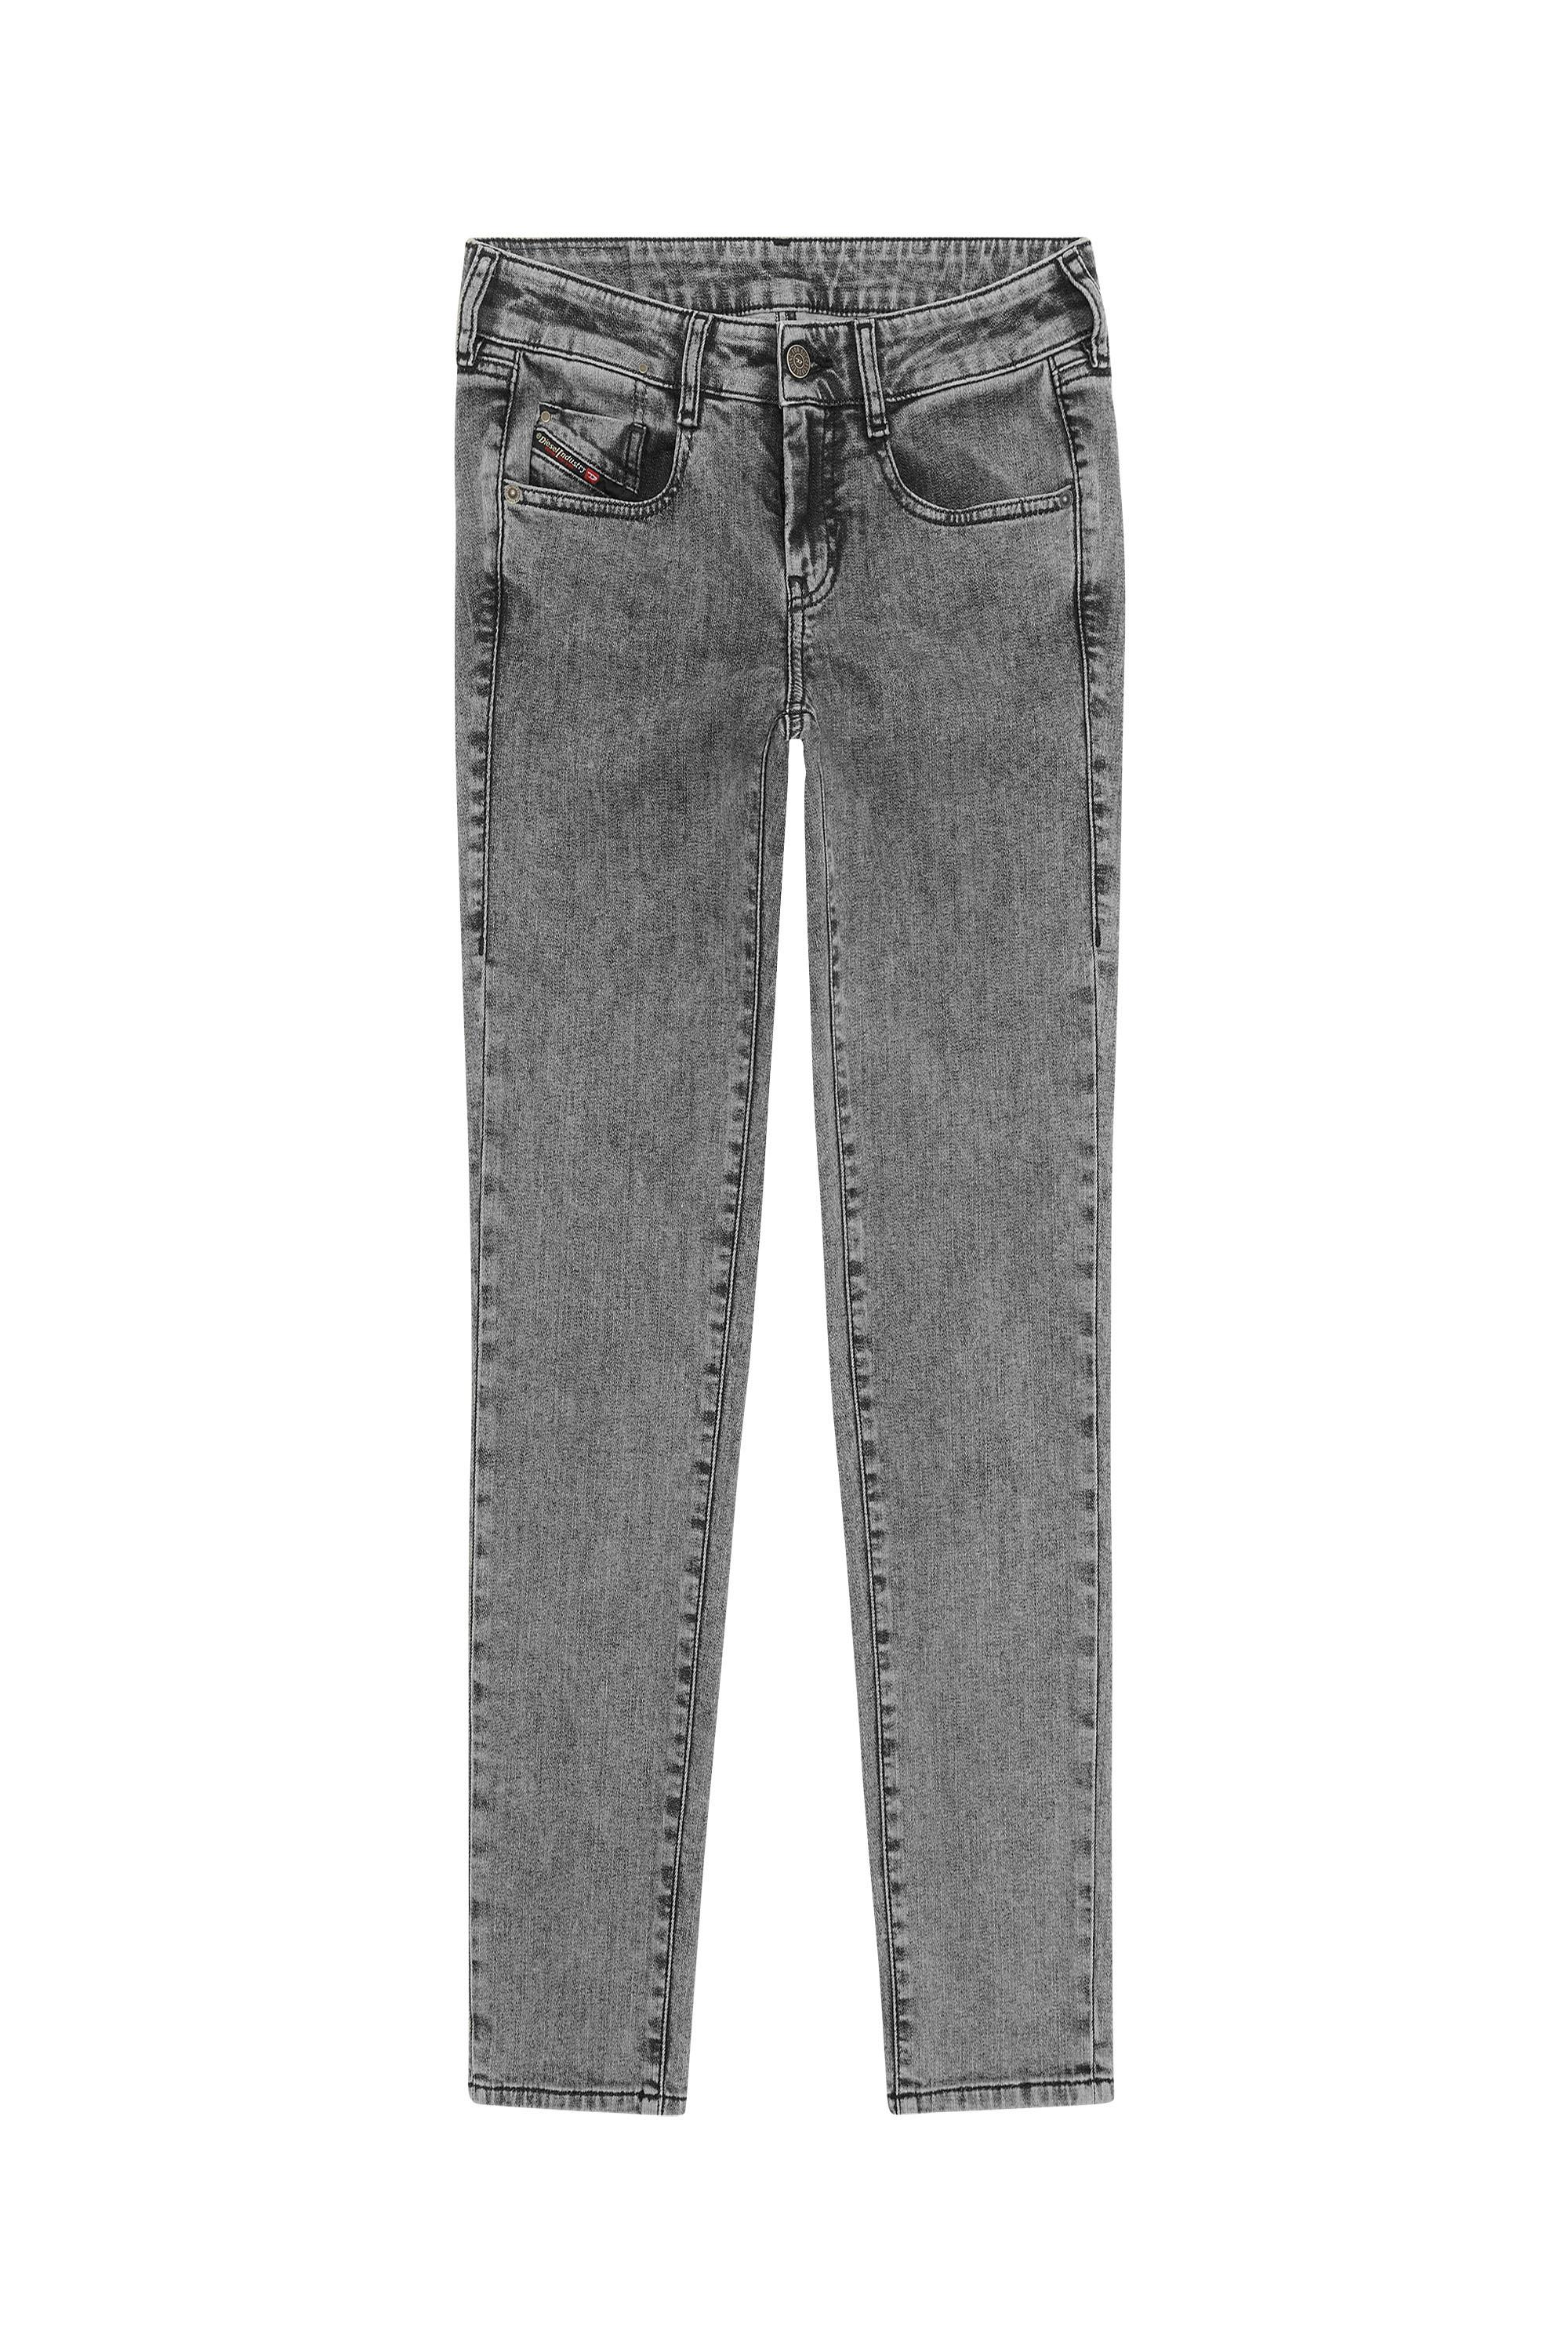 Diesel - D-Ollies JoggJeans® 09D07 Slim, Black/Dark grey - Image 2